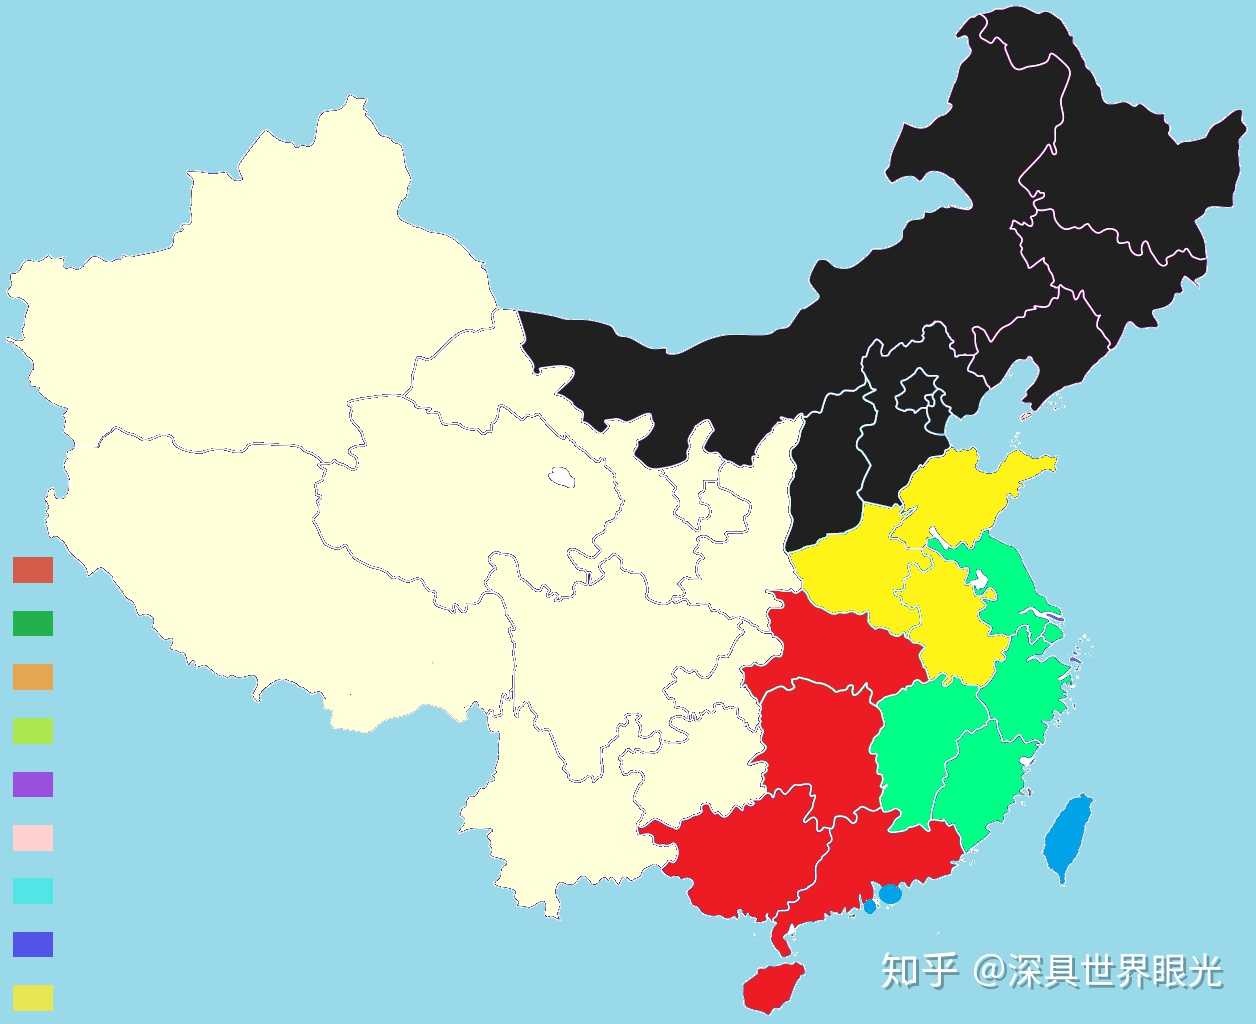 7亿左右 2,为了方便,"皖北 苏北"是用安徽省数据代替的 3,gdp排名与图片